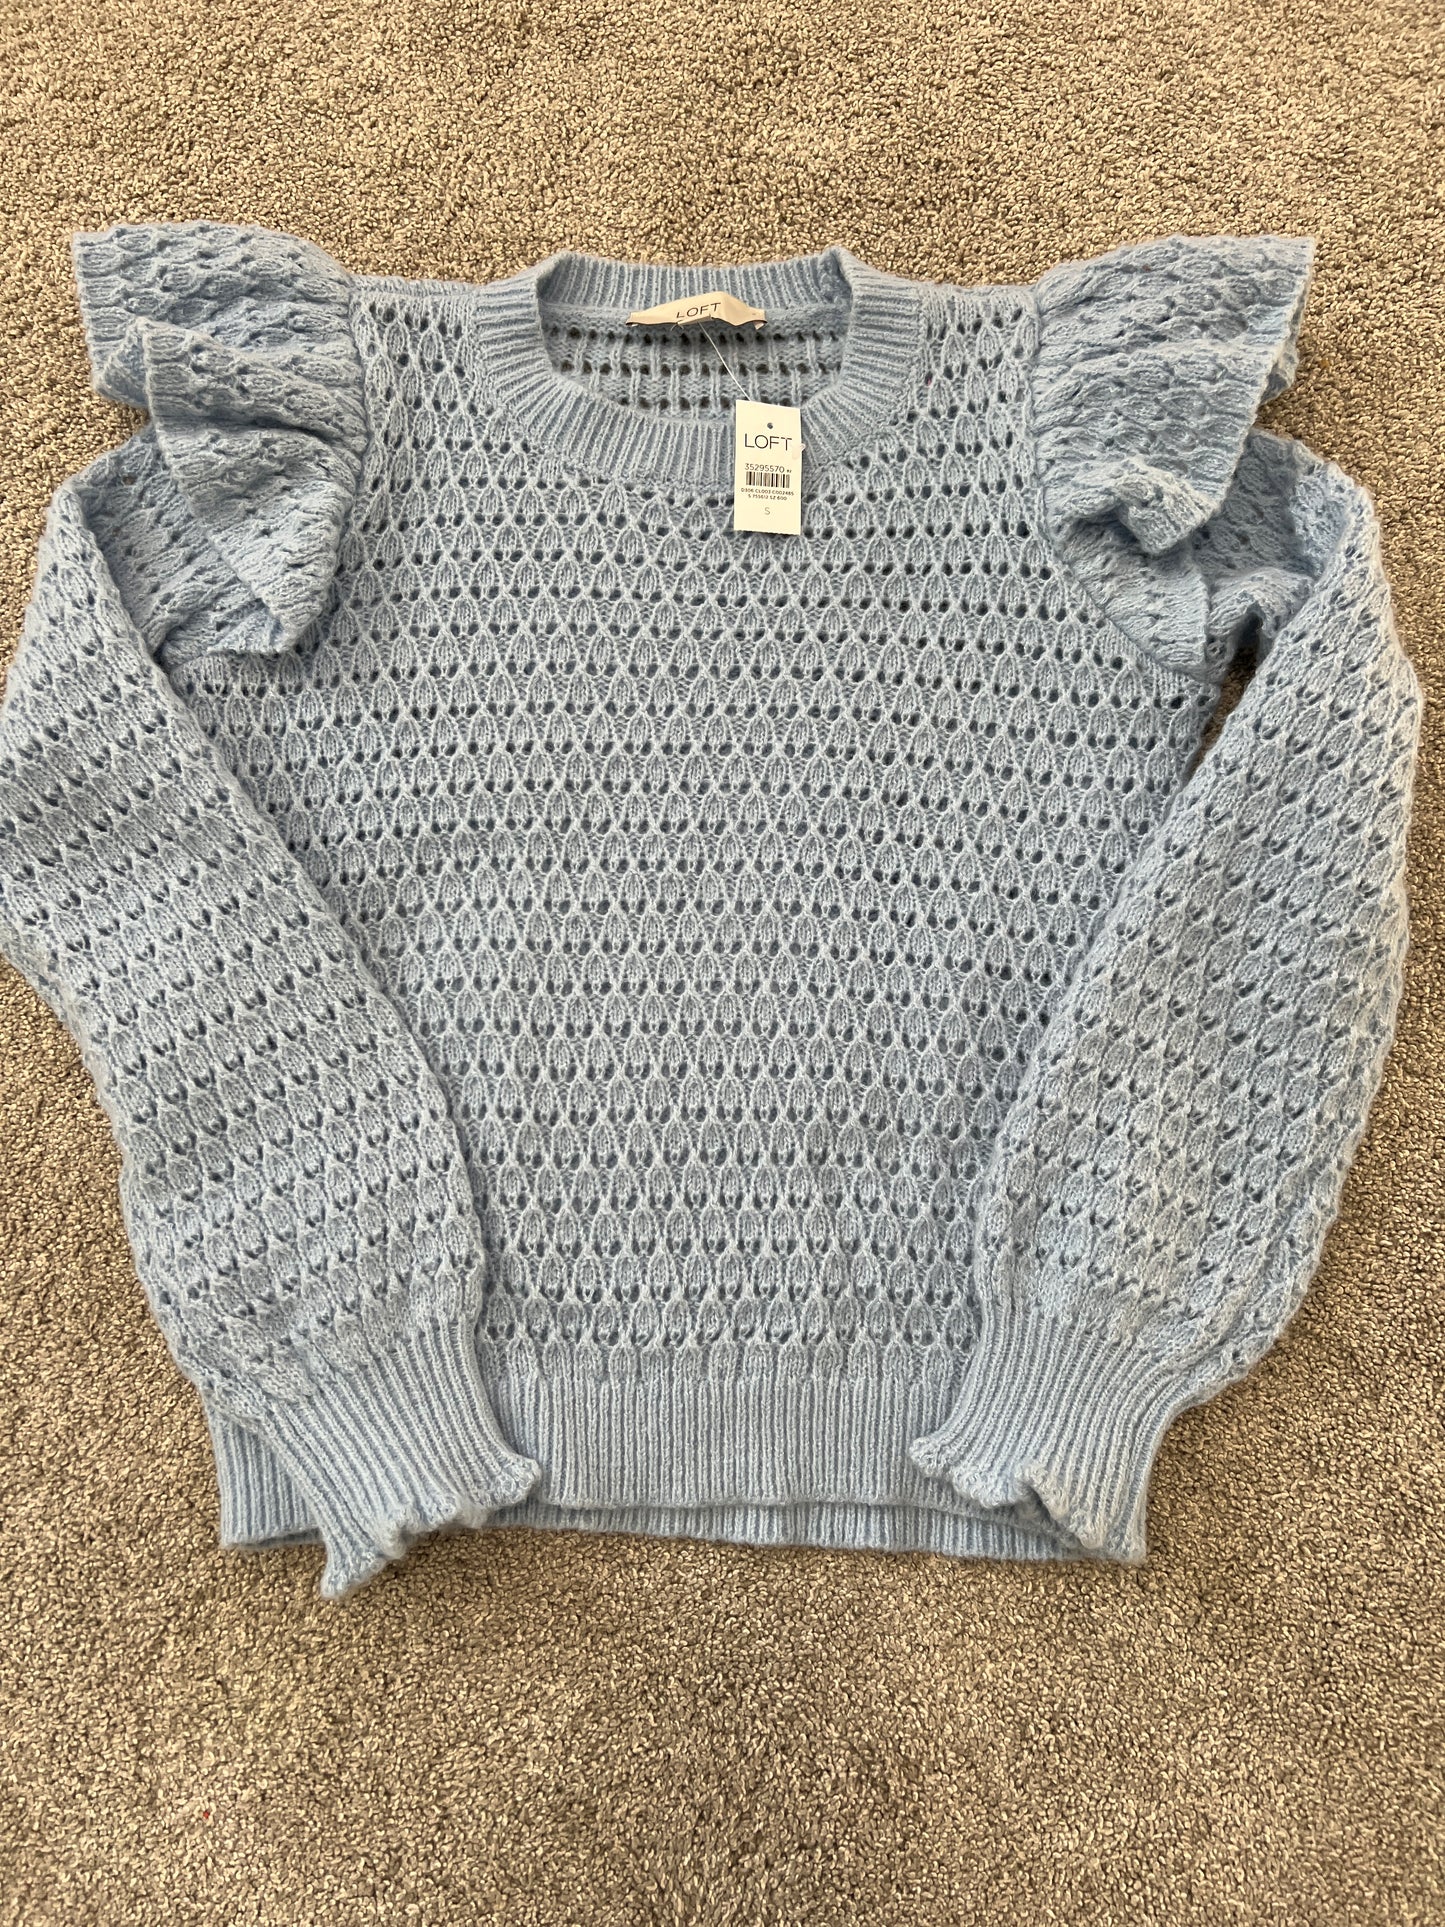 Loft NWT Blue Knit Sweater S